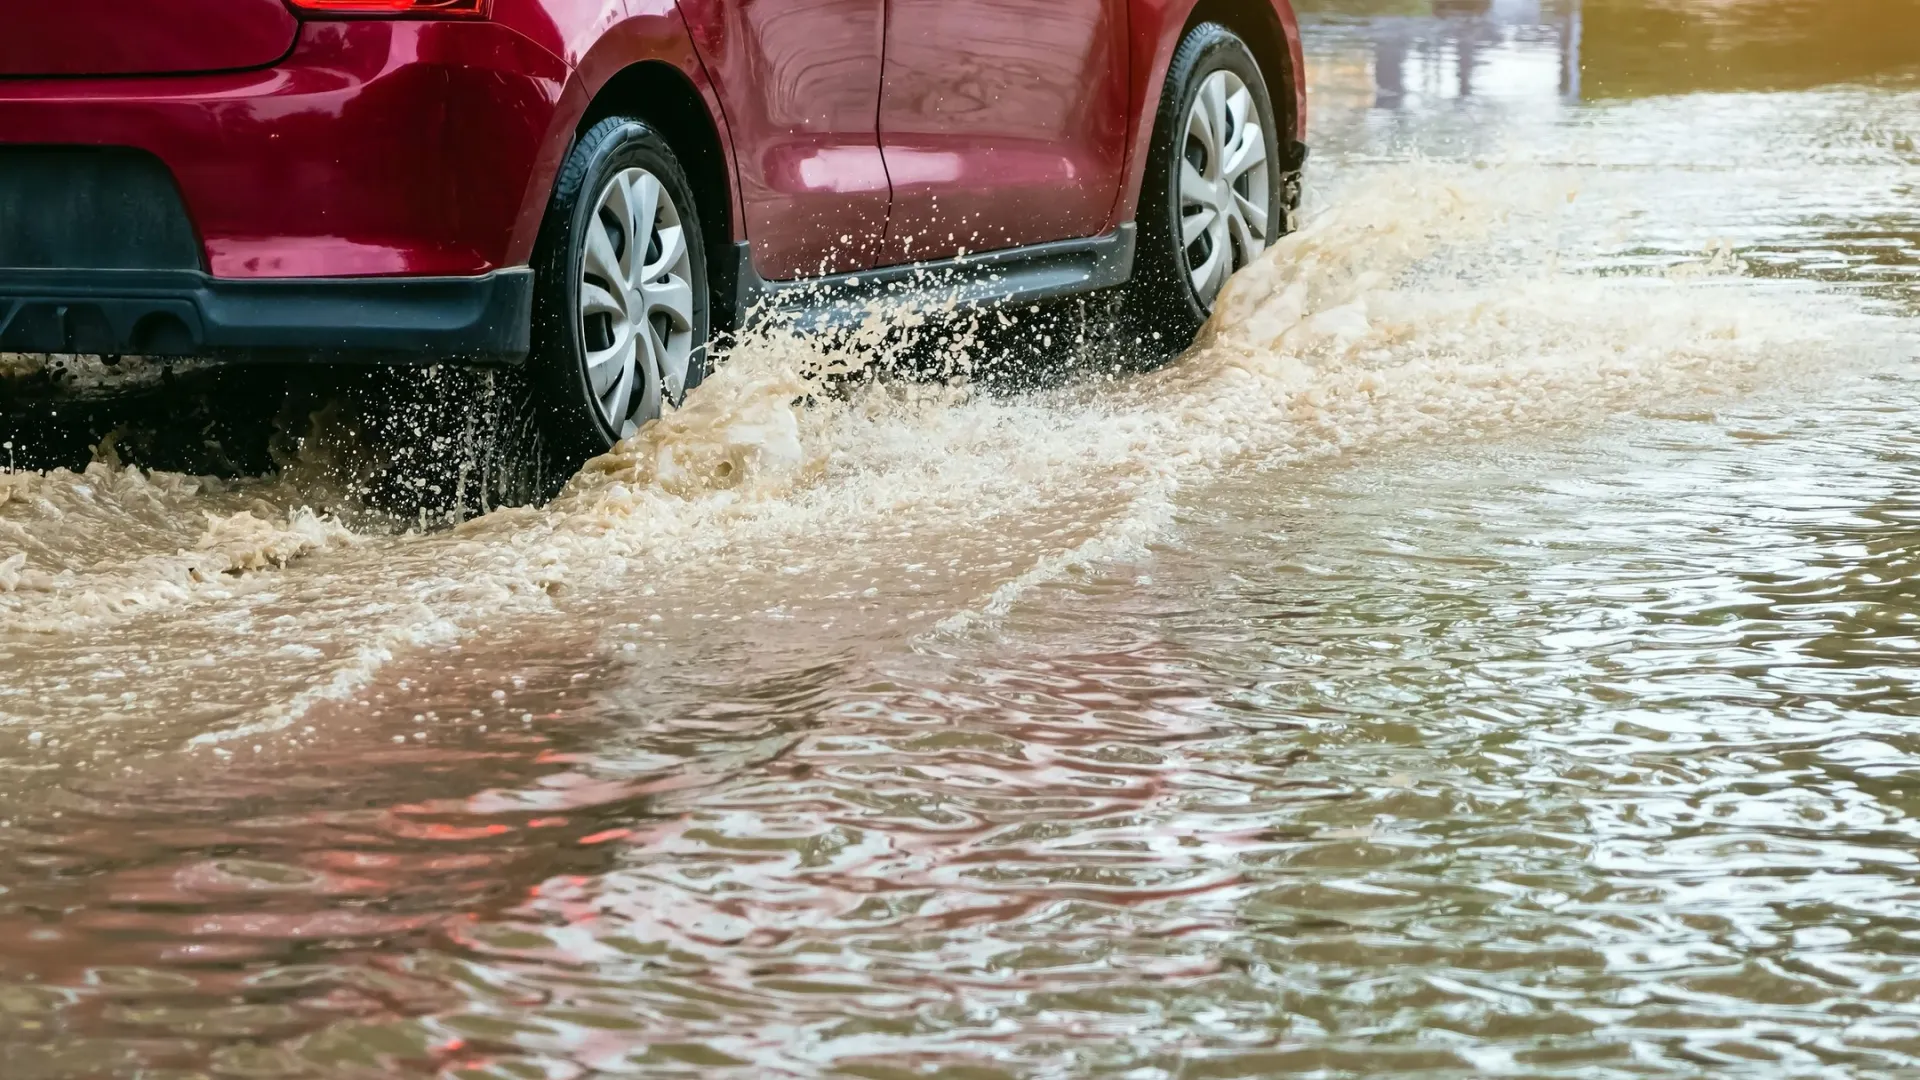 Автомобилистам было сложно преодолеть затопленный мост. Фото: Nach-Noth/Shutterstock/Fotodom